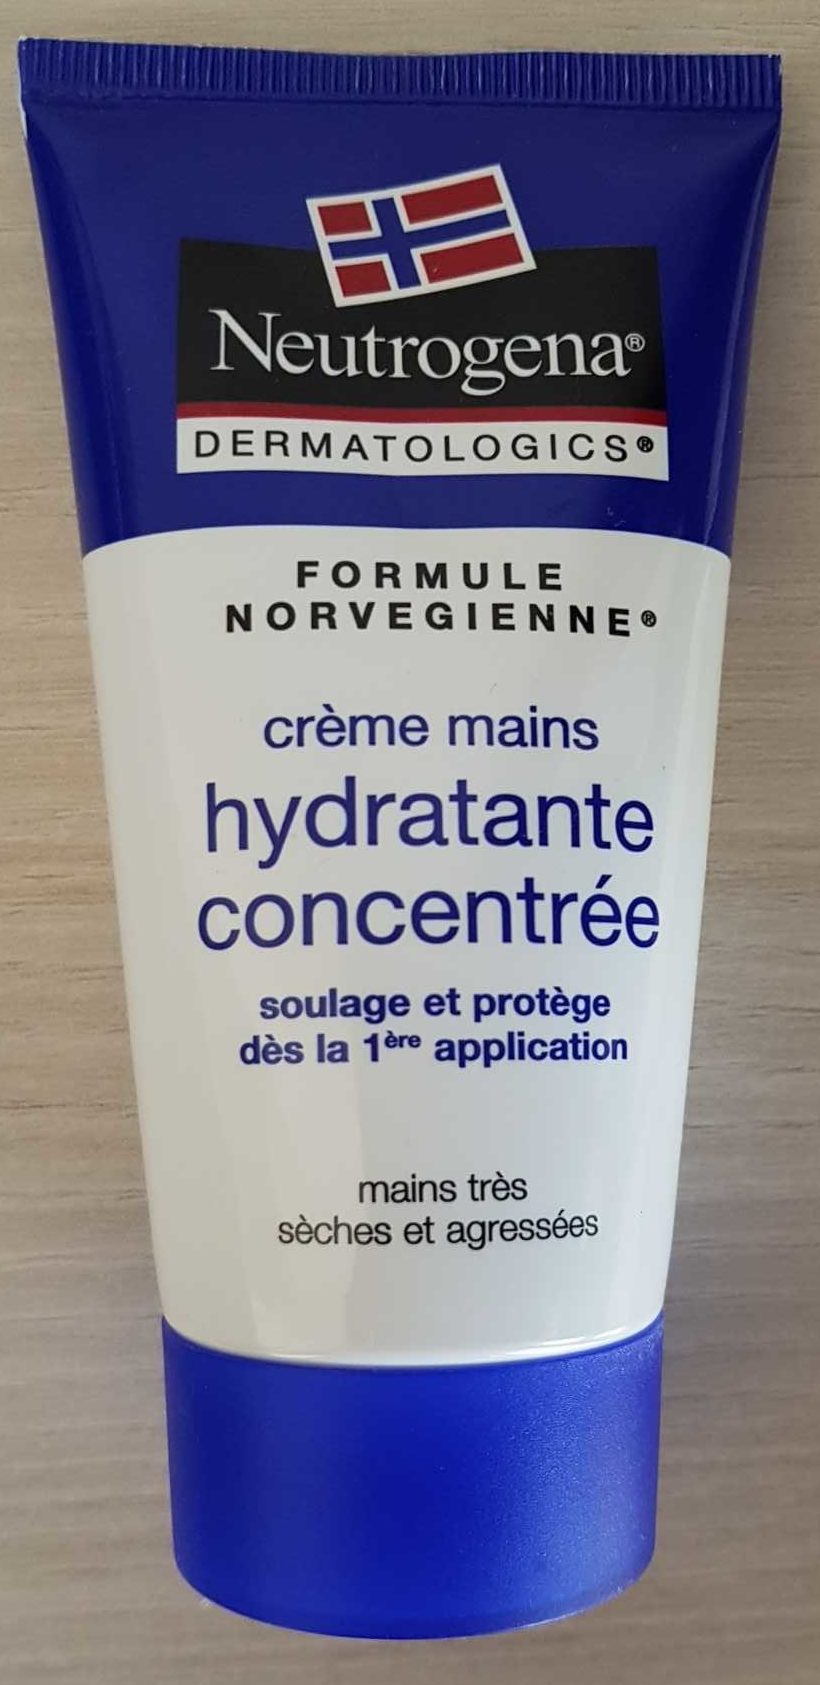 Crème mains hydratante concentrée - Product - fr